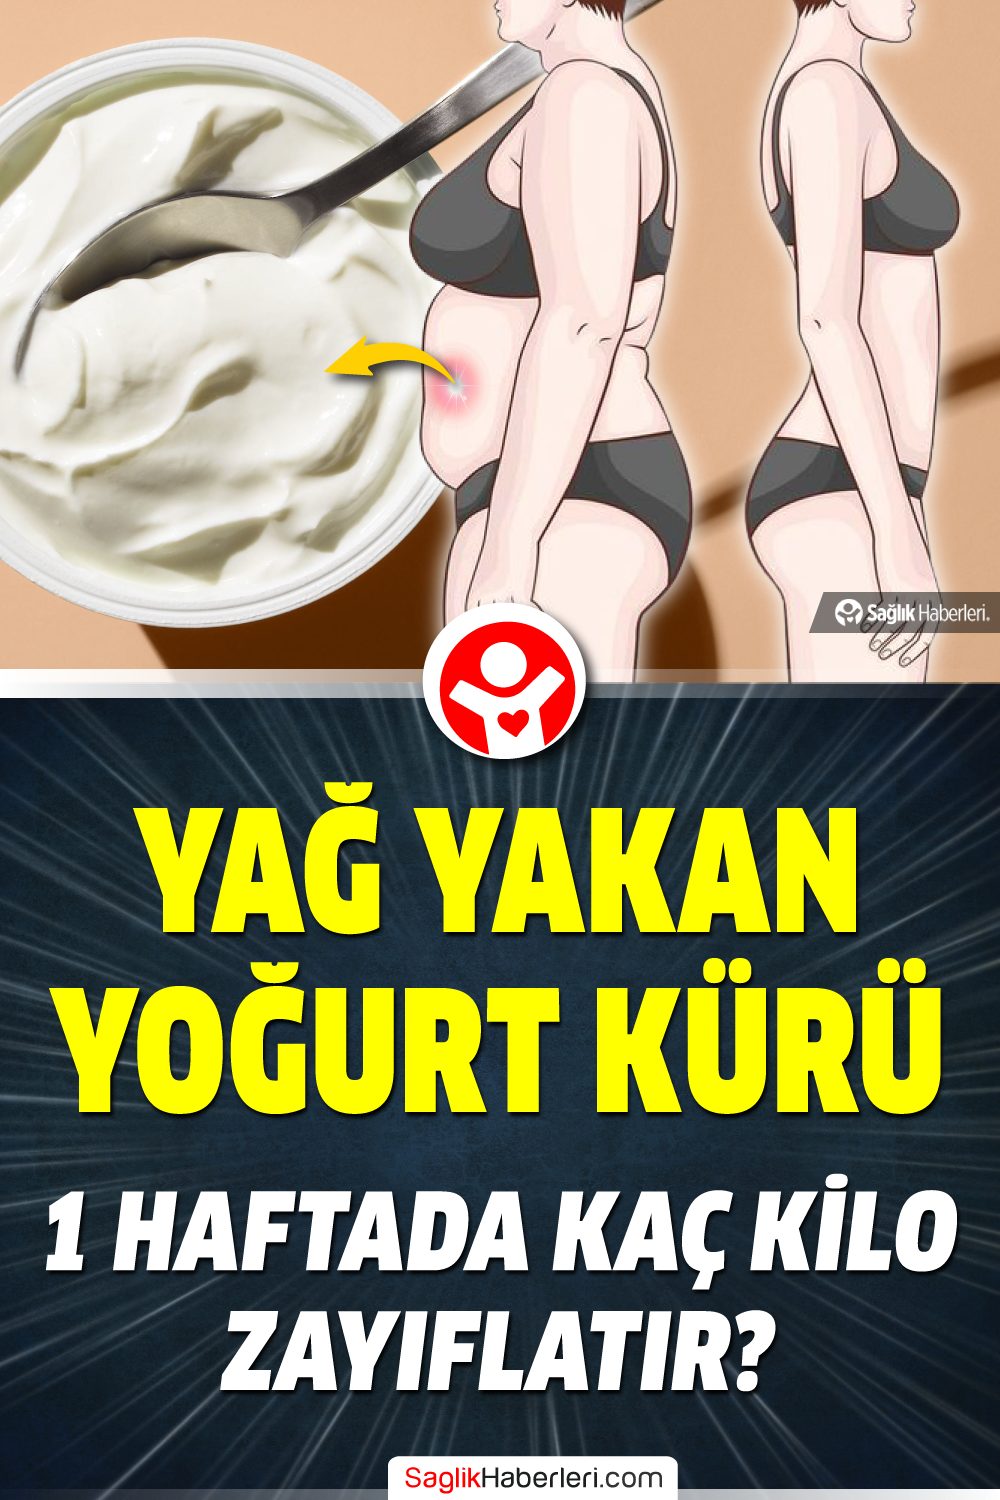 Yağ yakan yoğurt kürü ile 1 haftada kaç kilo verilir?